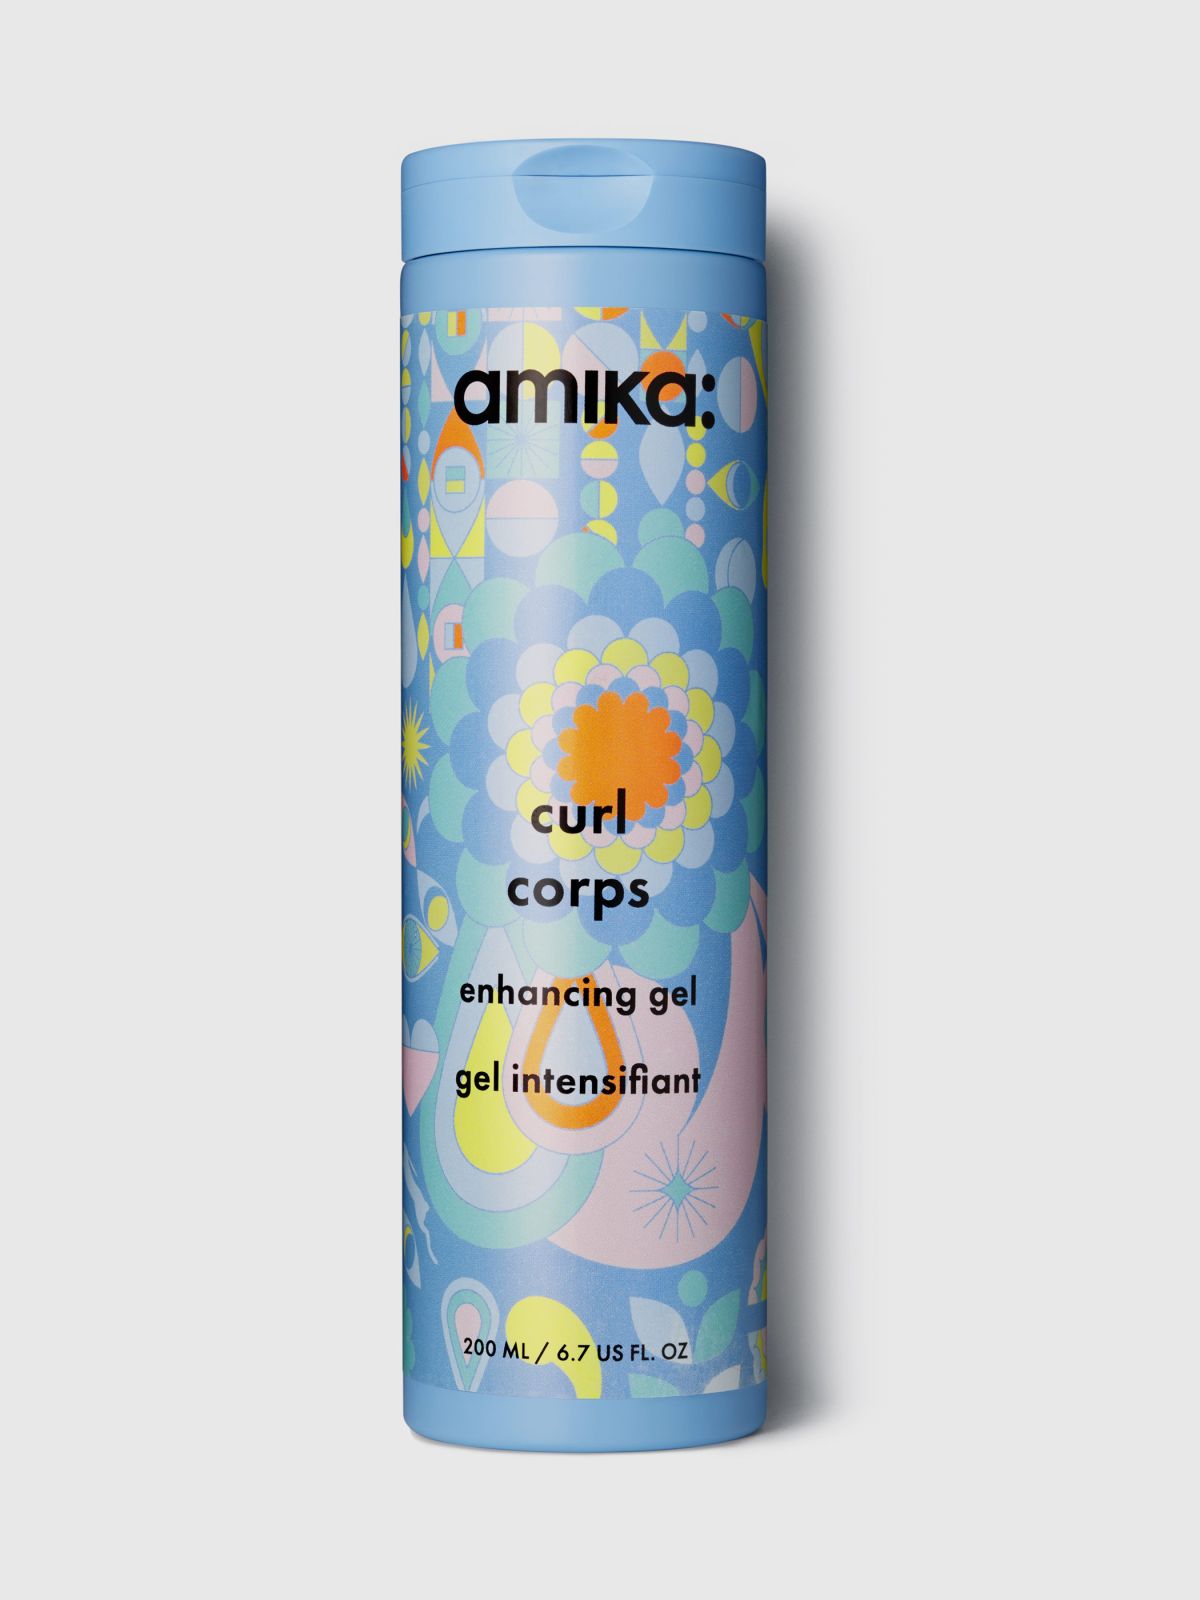  ג'ל גלייז מחמיא לתלתלים - Curl corps enhancing gel 200ml של amika